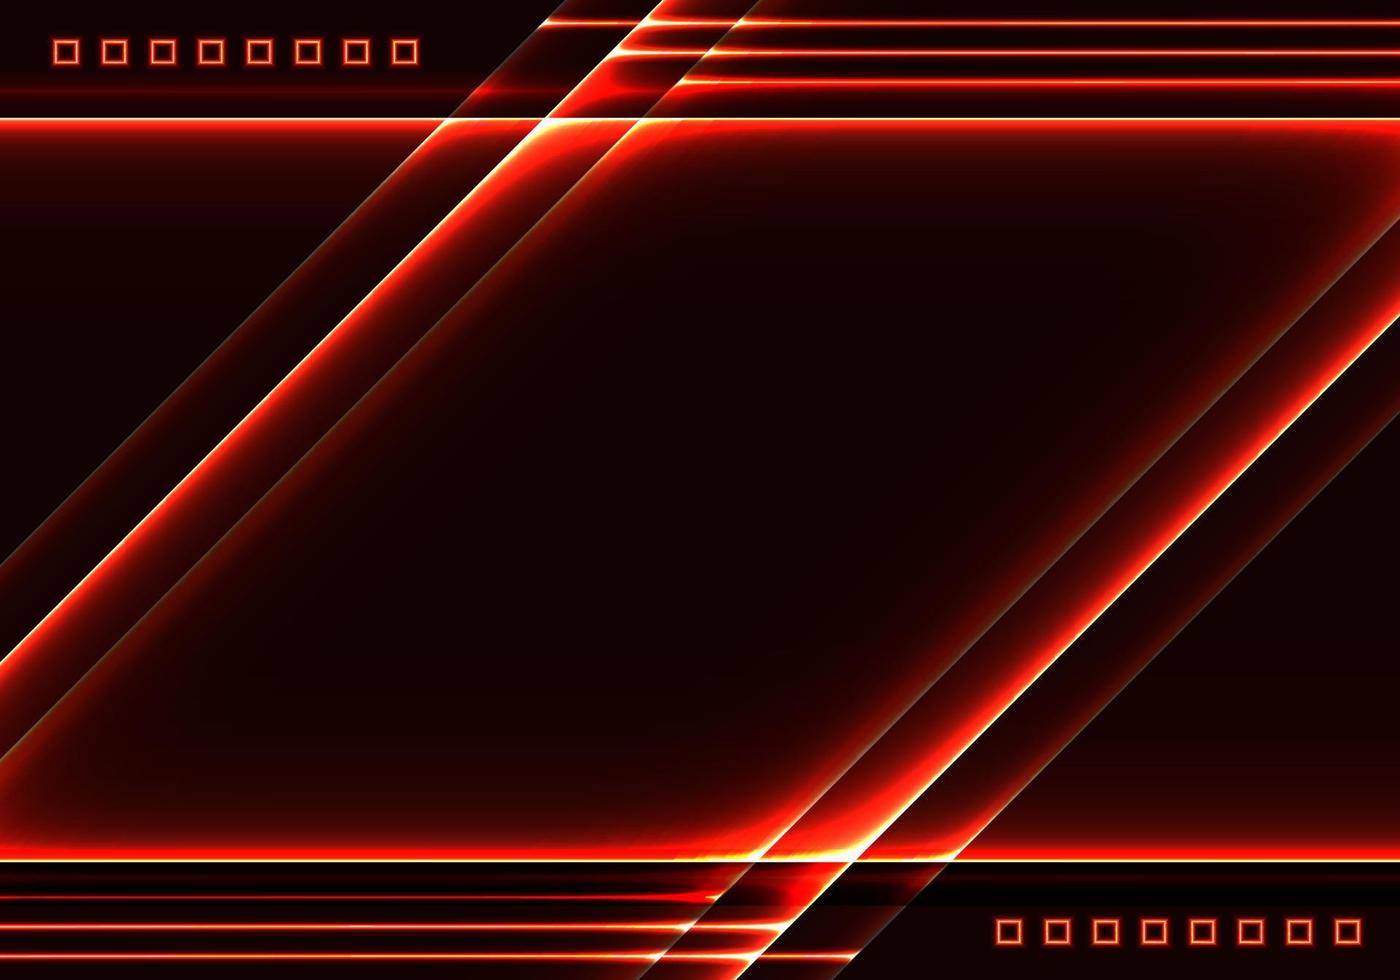 modelo de tecnologia abstrata linhas de laser vermelhas brilhantes com elementos quadrados em fundo preto vetor